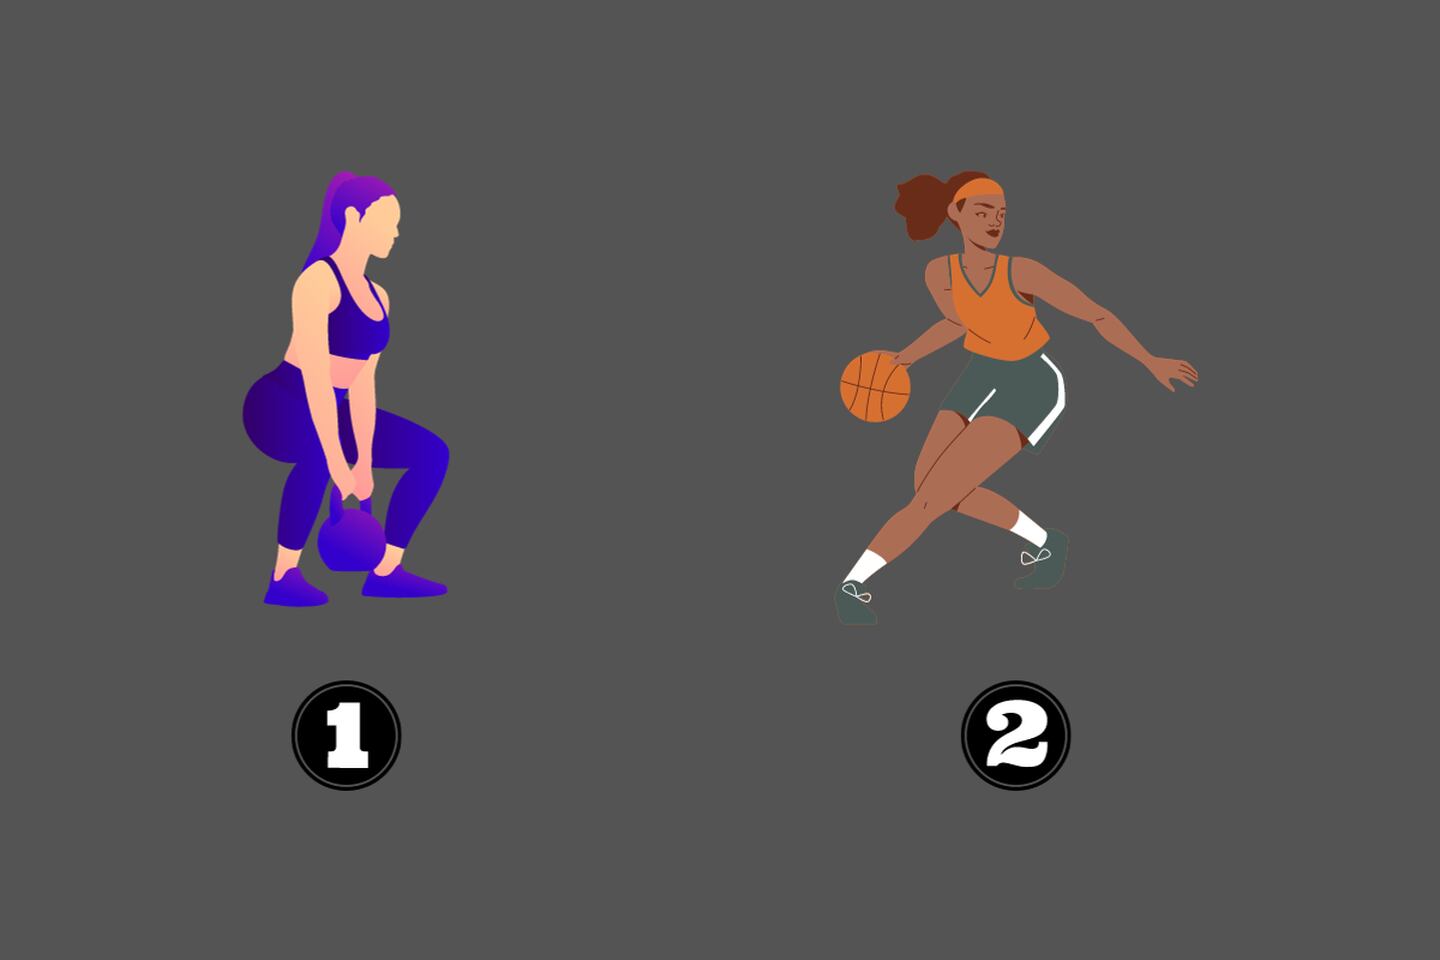 En este test de personalidad hay dos opciones: una mujer haciendo pesas y otra jugando básquetball.